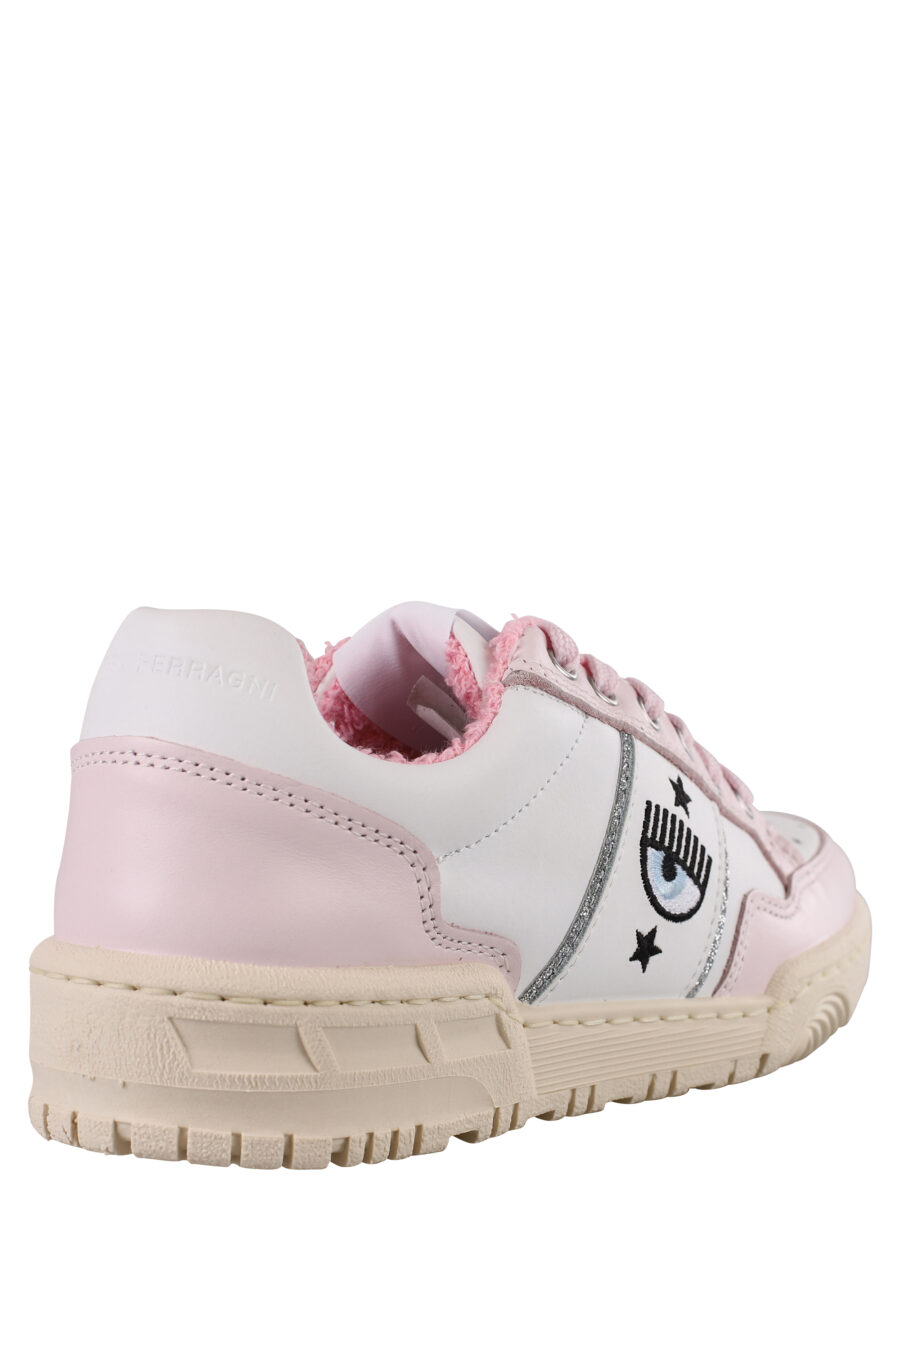 Zapatillas blancas y rosas con logo ojo e interior felpudo - IMG 1162